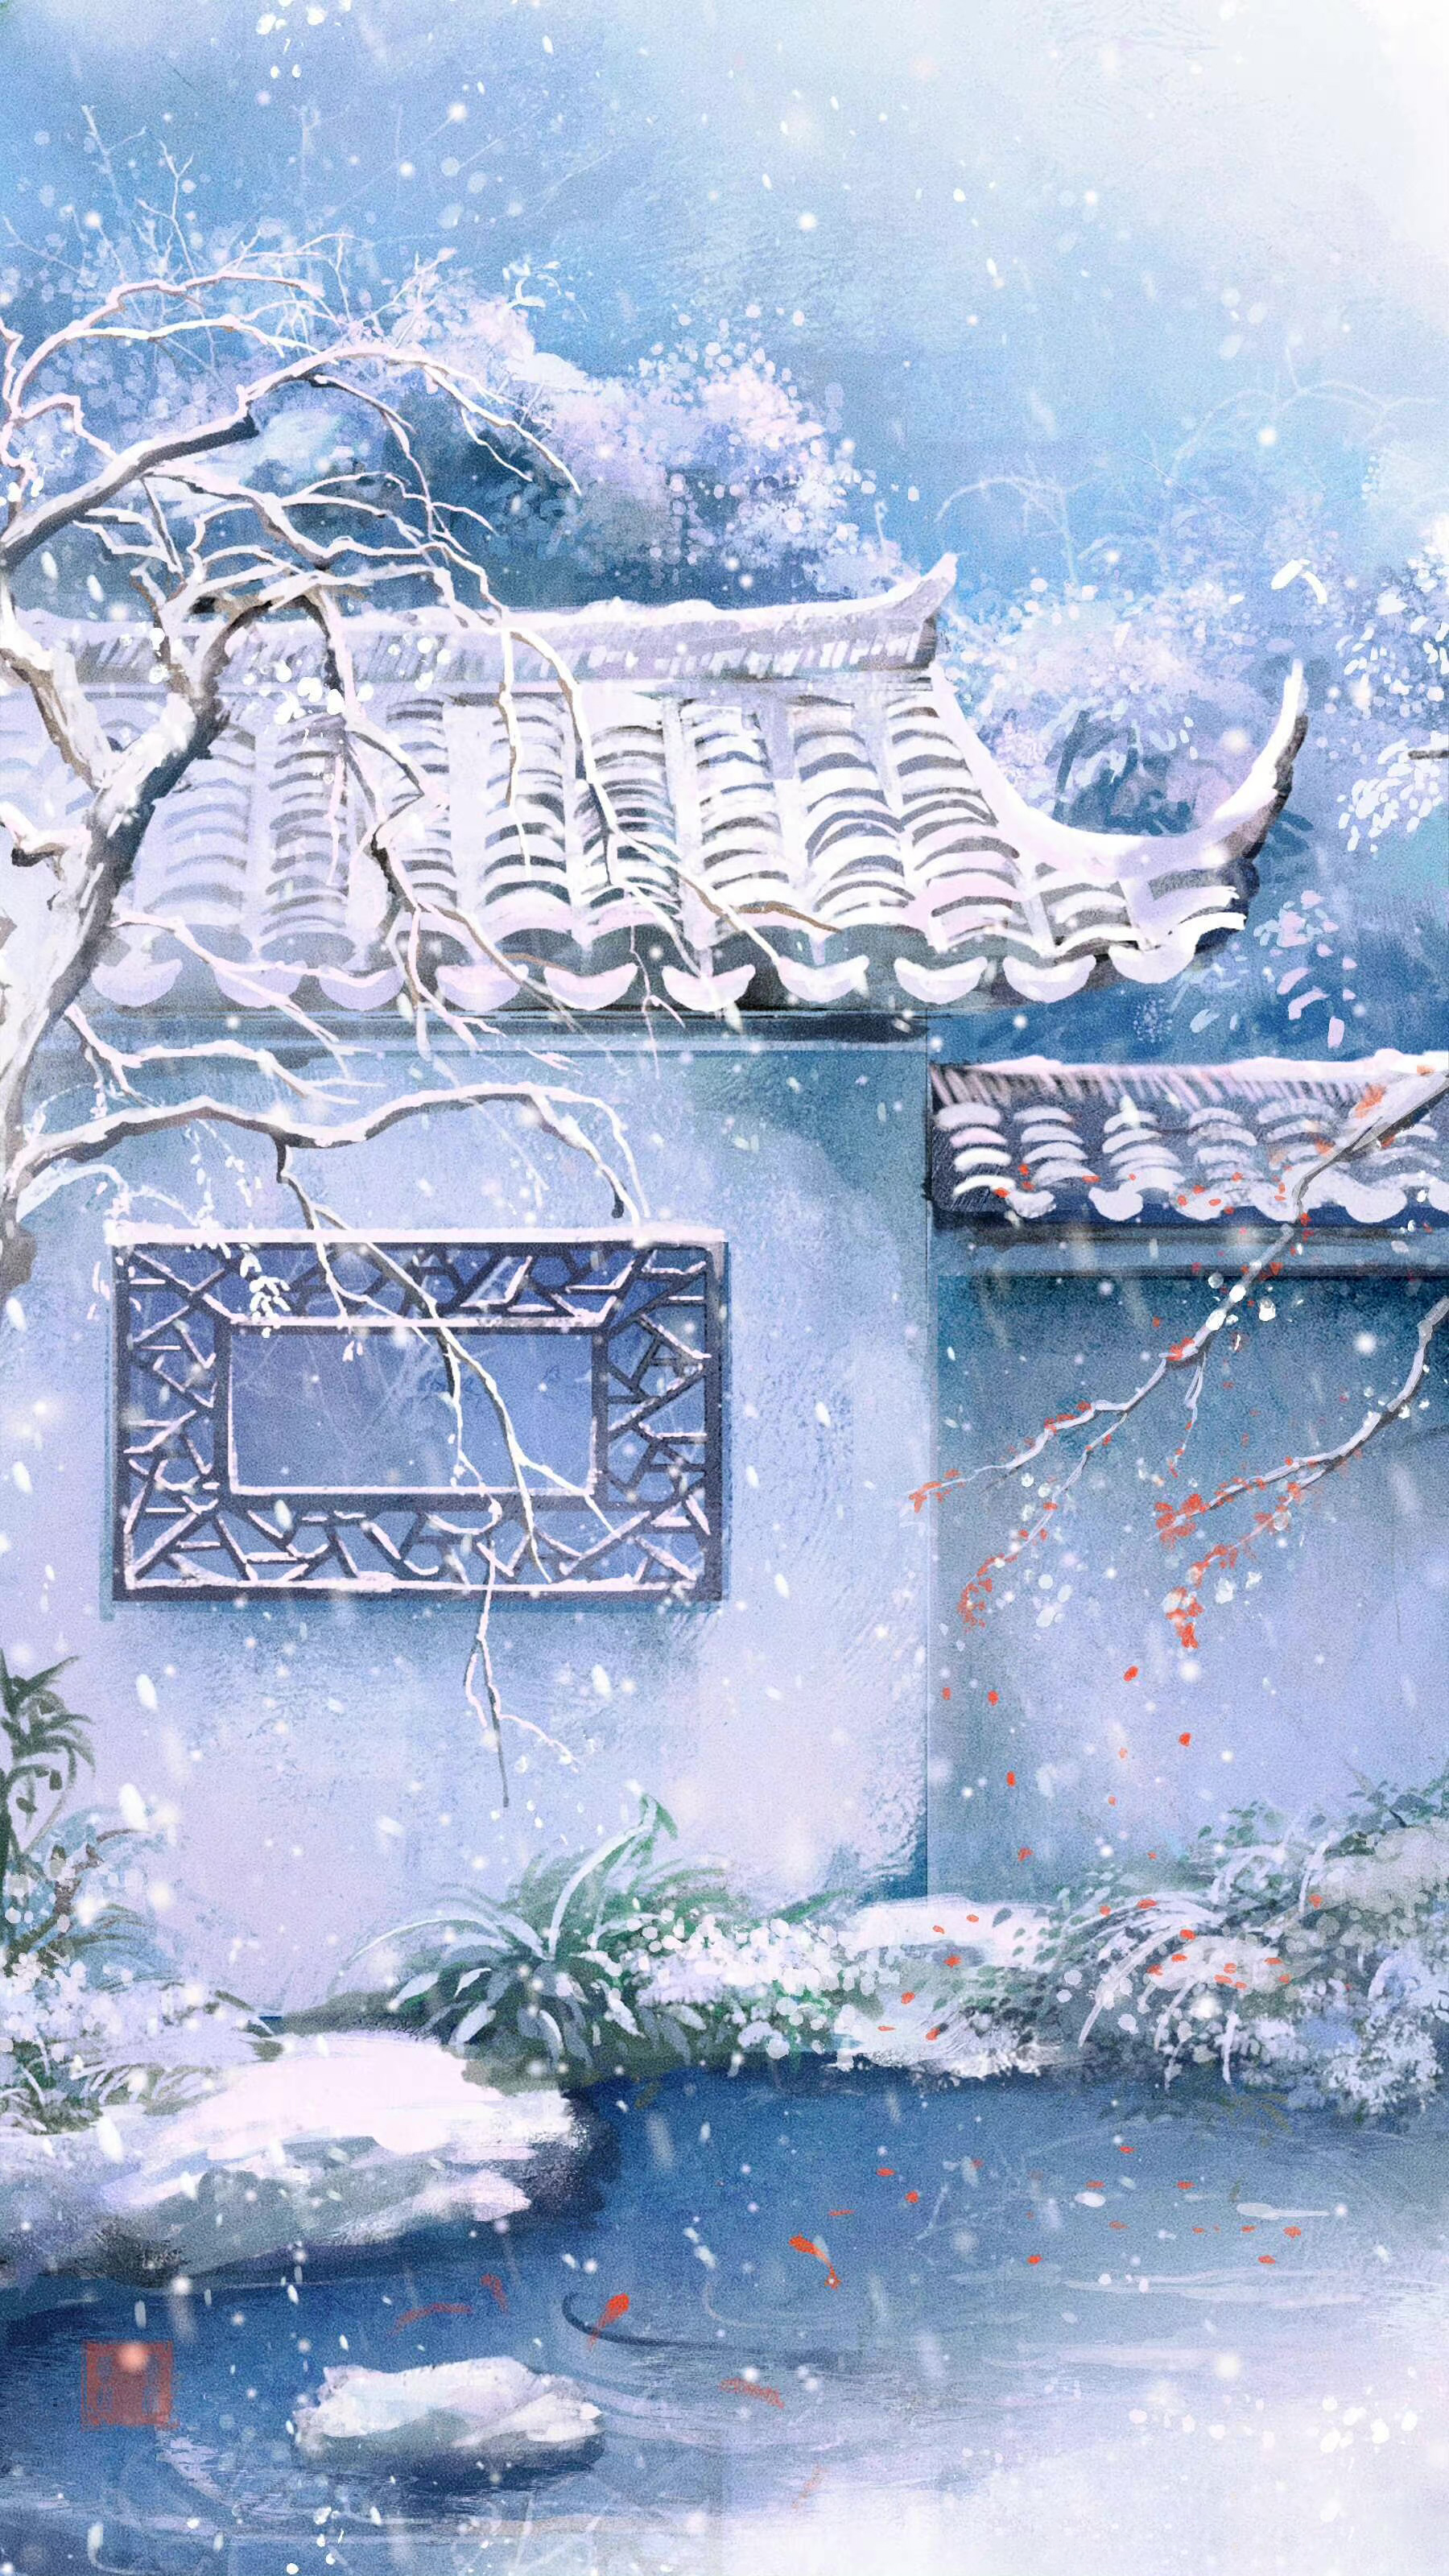 分享一些小清新古风中国风插画壁纸